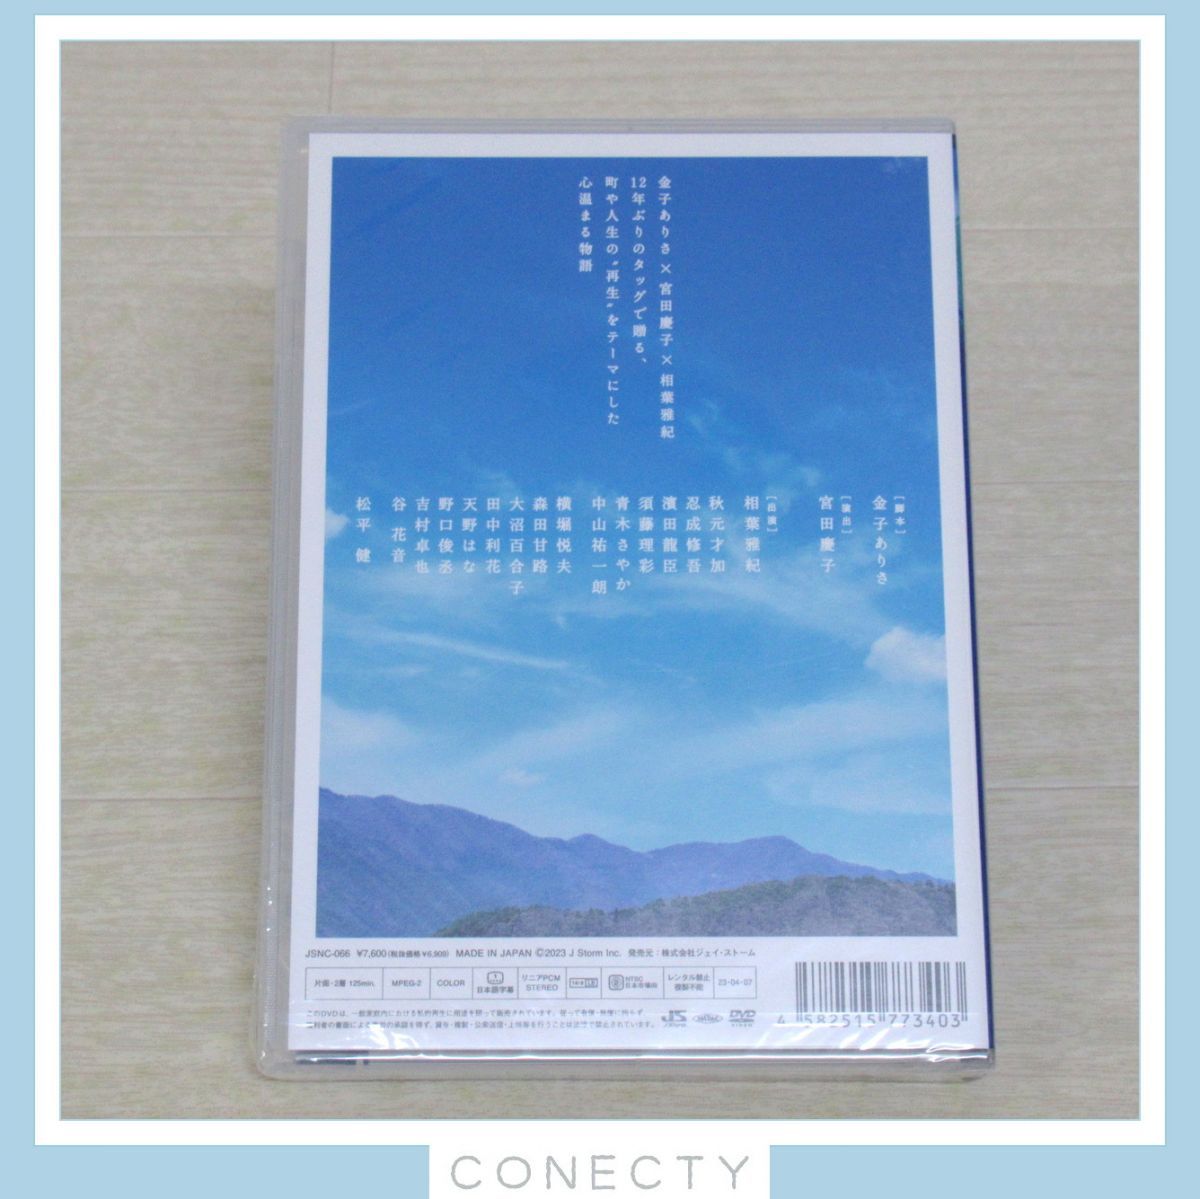 相葉雅紀 ようこそ、ミナト先生 DVD/フォトブック 2点セット【I4【SK 